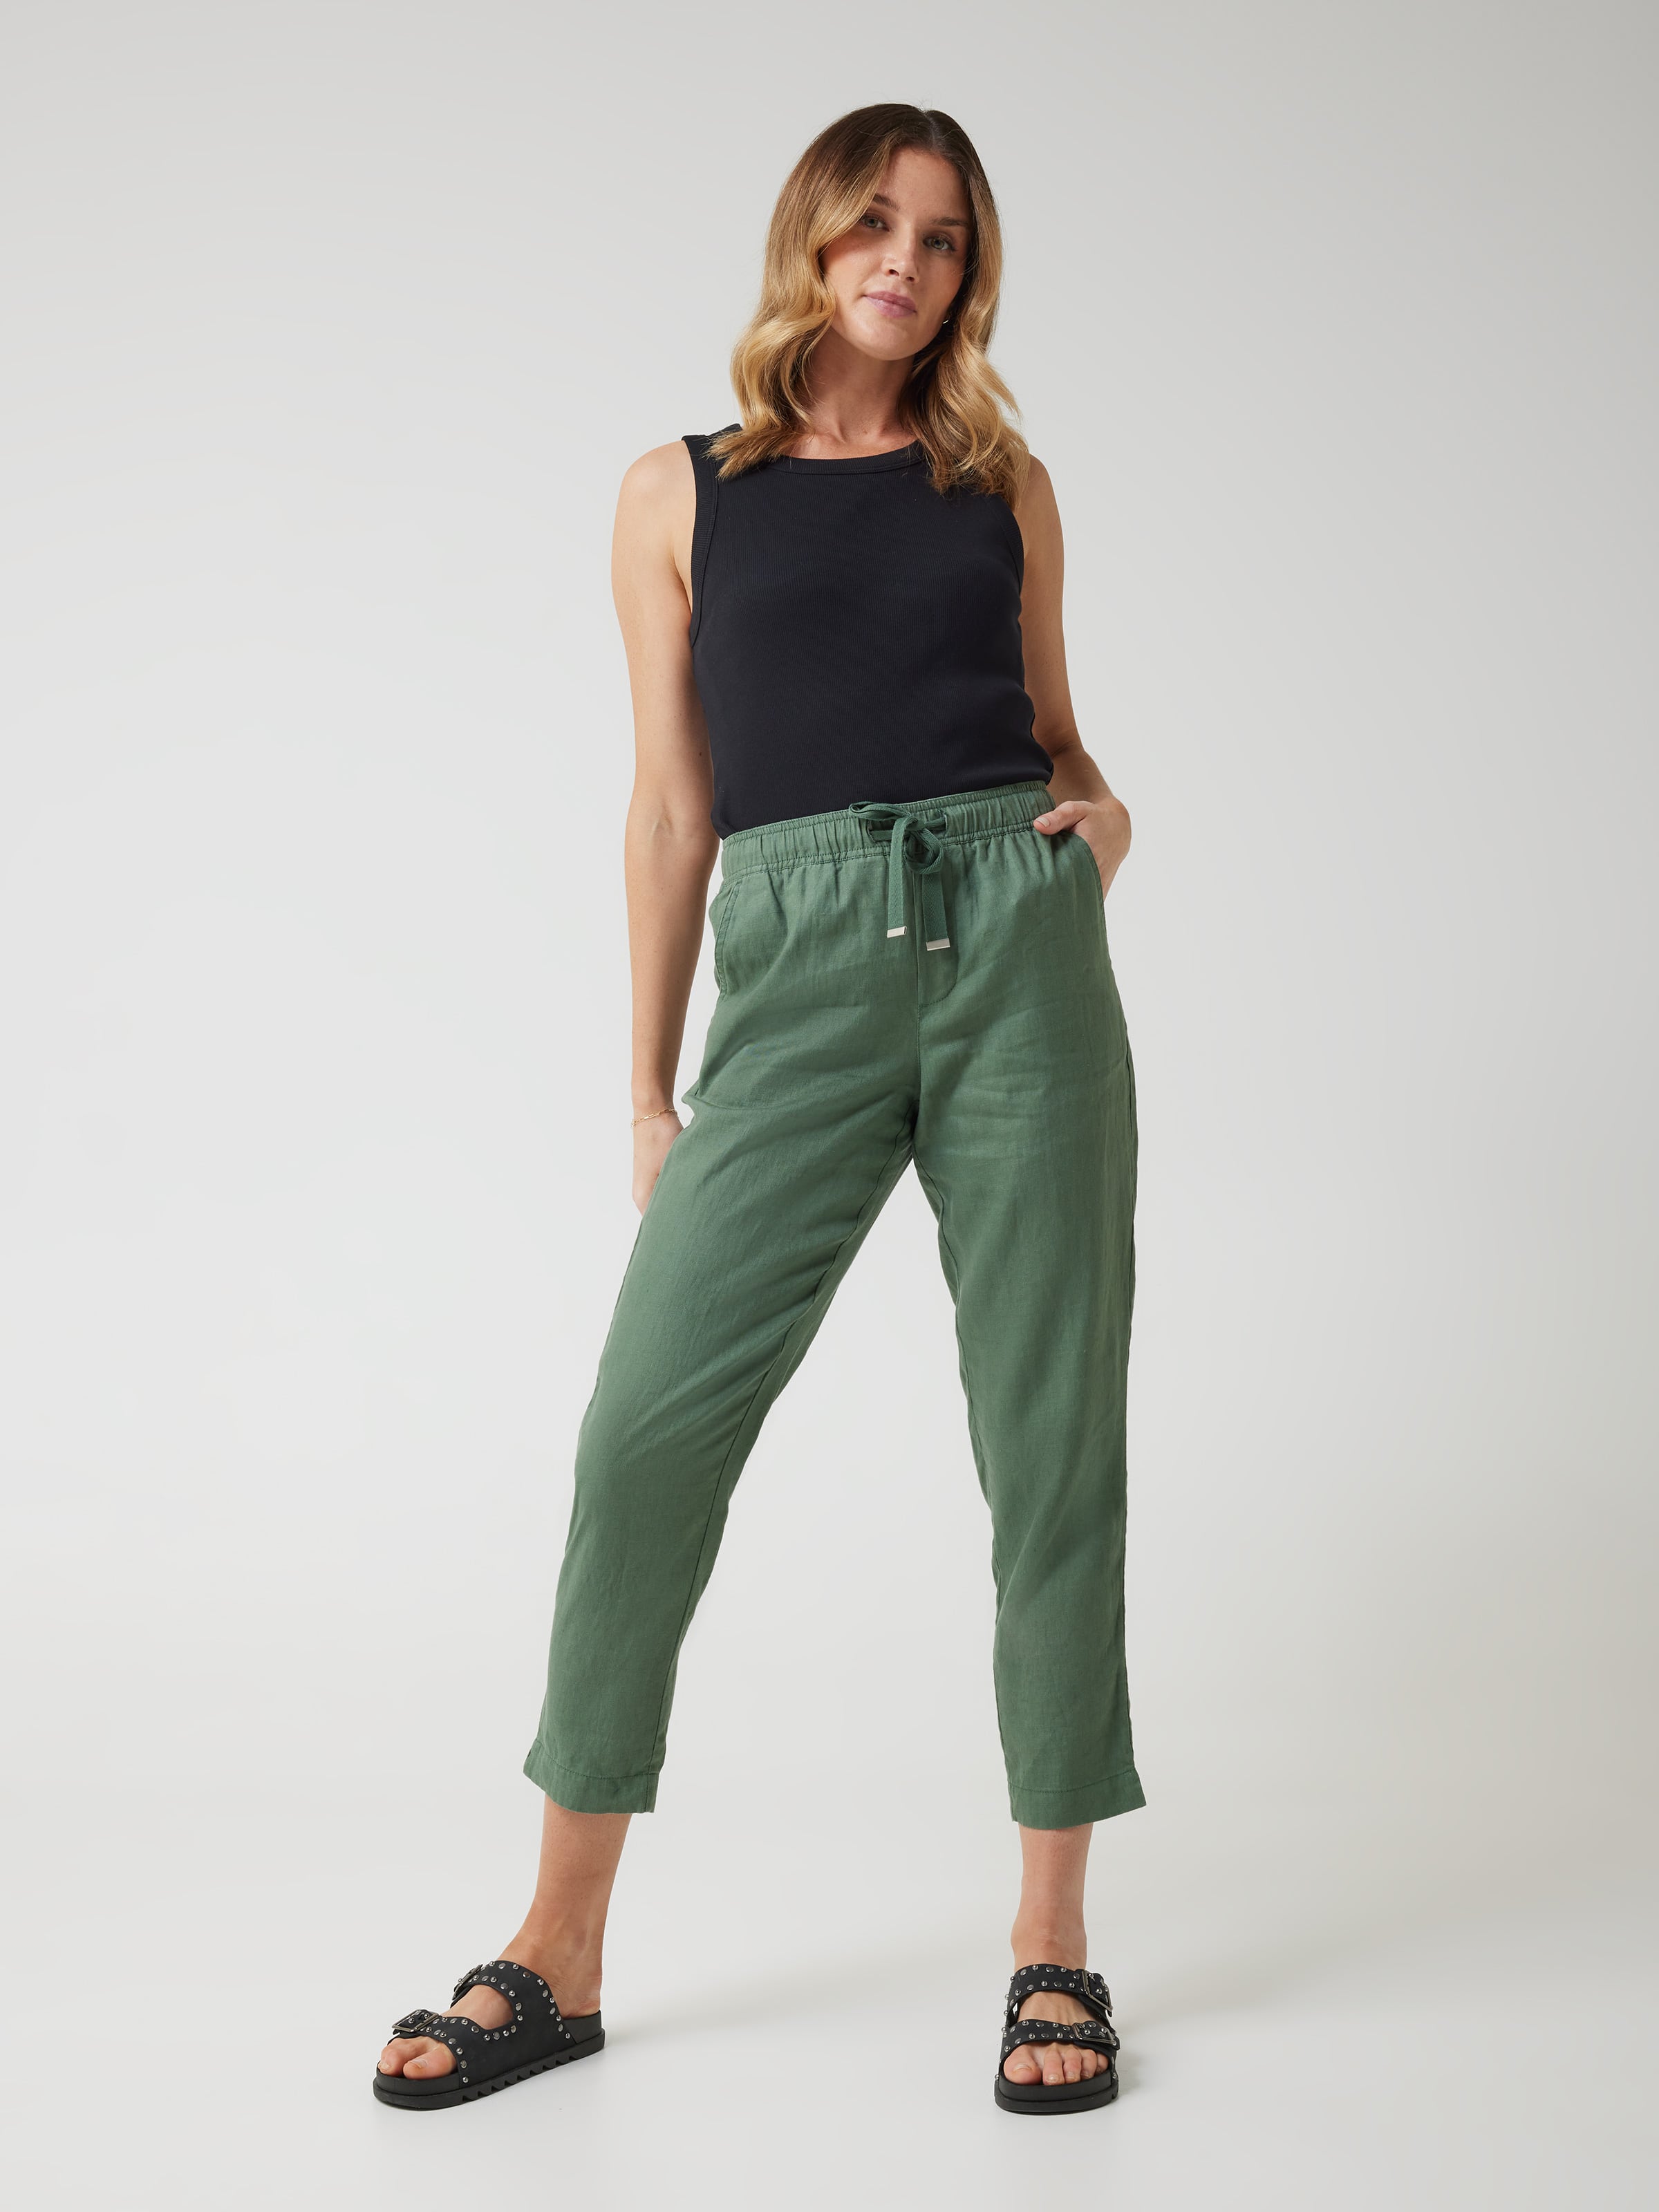 Sell Helena Pants Olive Long-pants